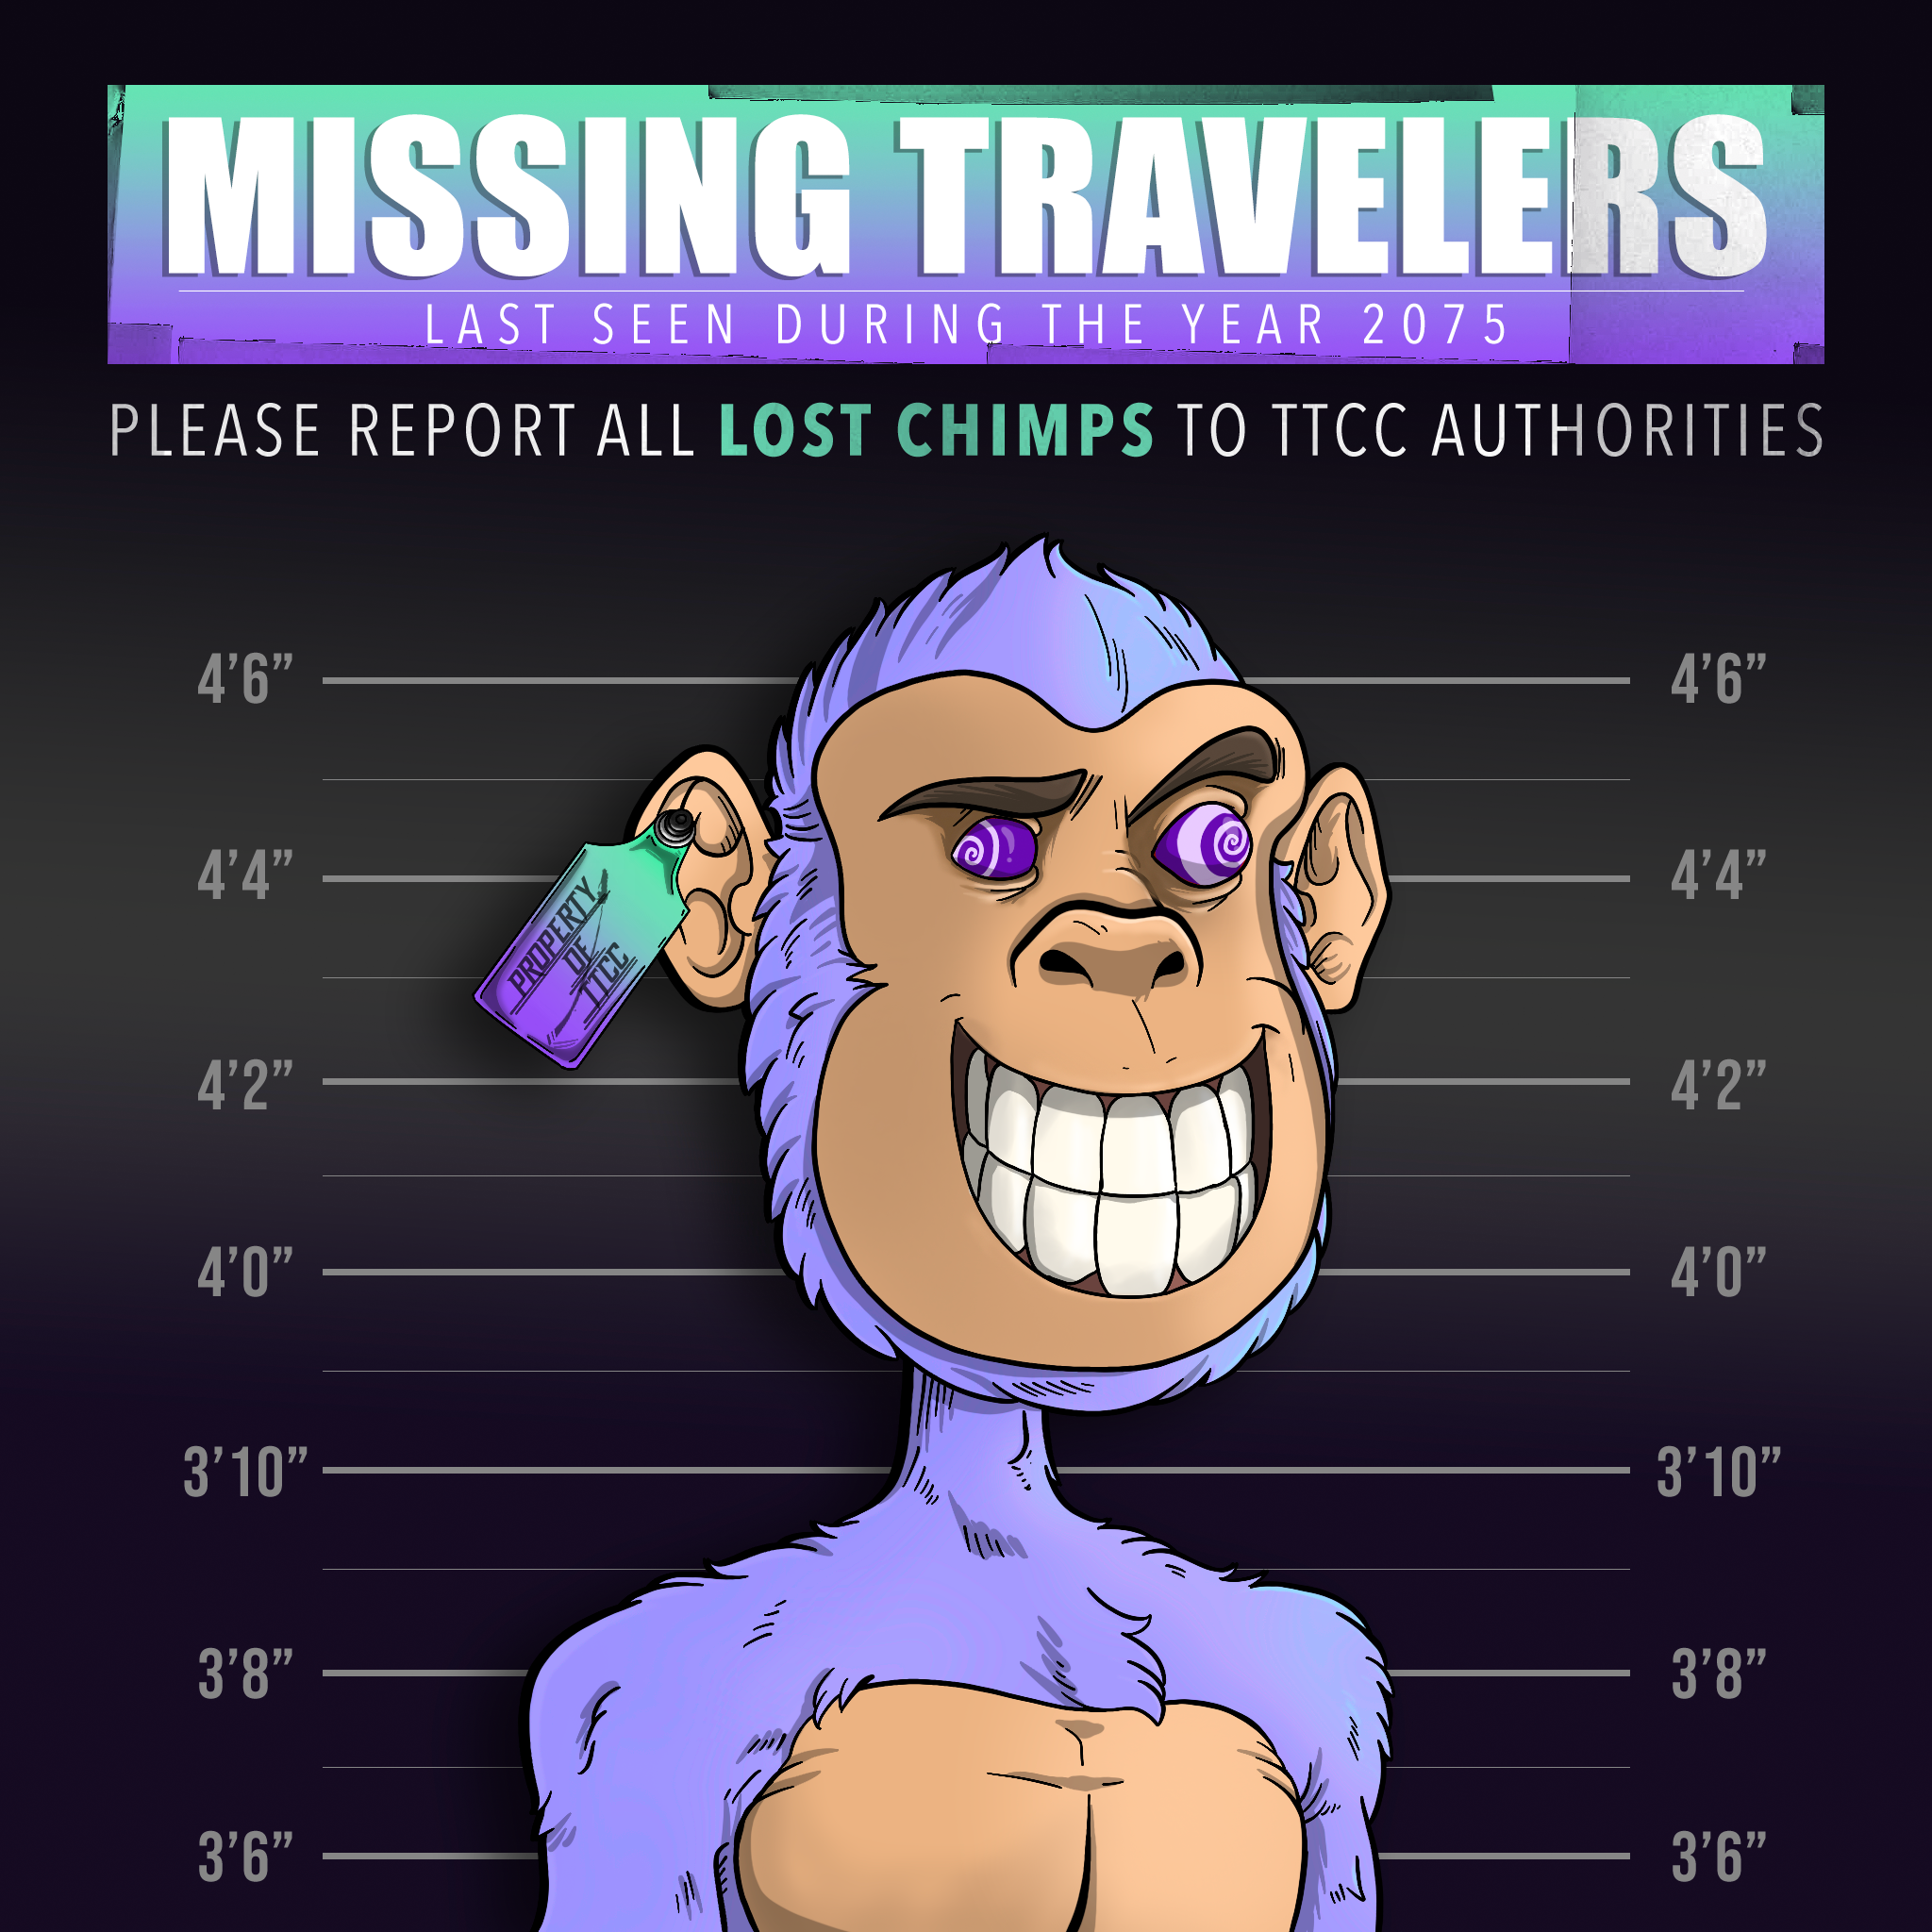 Lost Chimps #3575